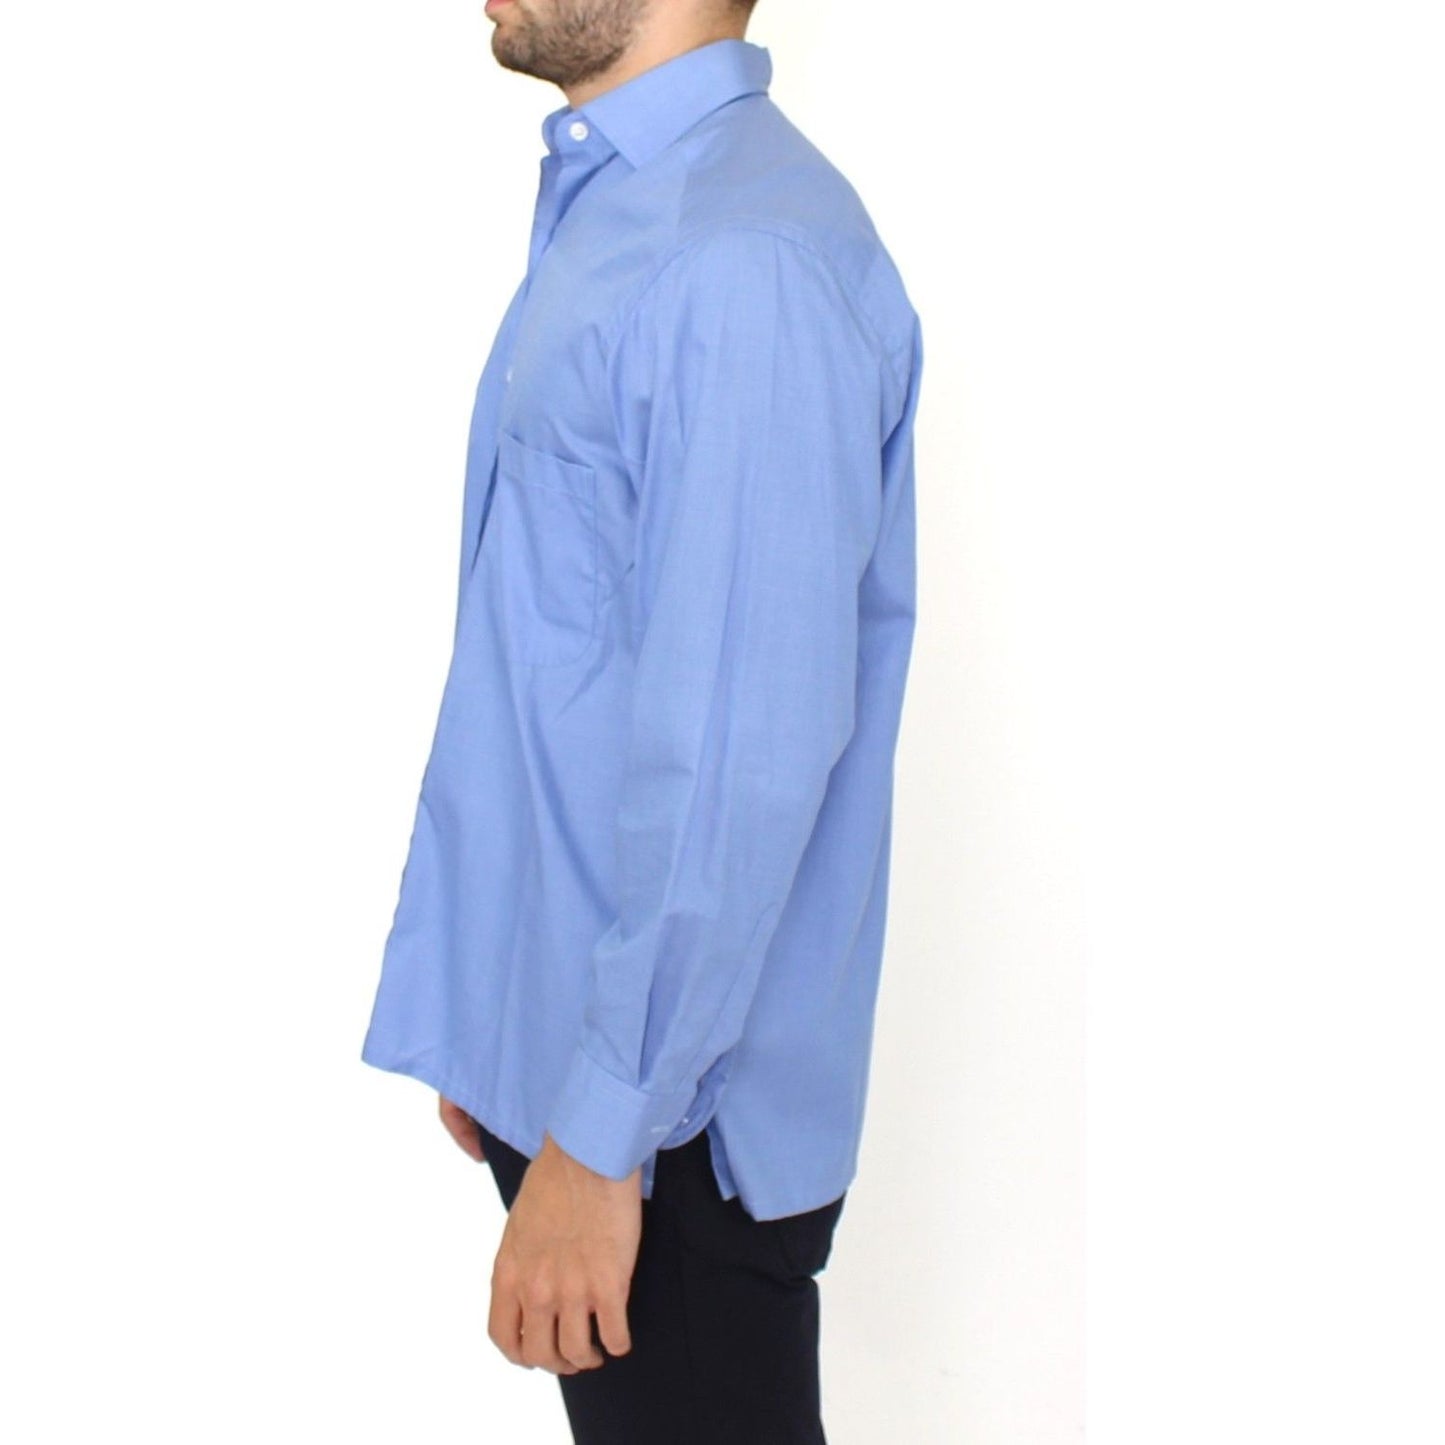 Ermanno Scervino Dapper Blue Cotton Dress Shirt for Men blue-cotton-dress-classic-fit-shirt